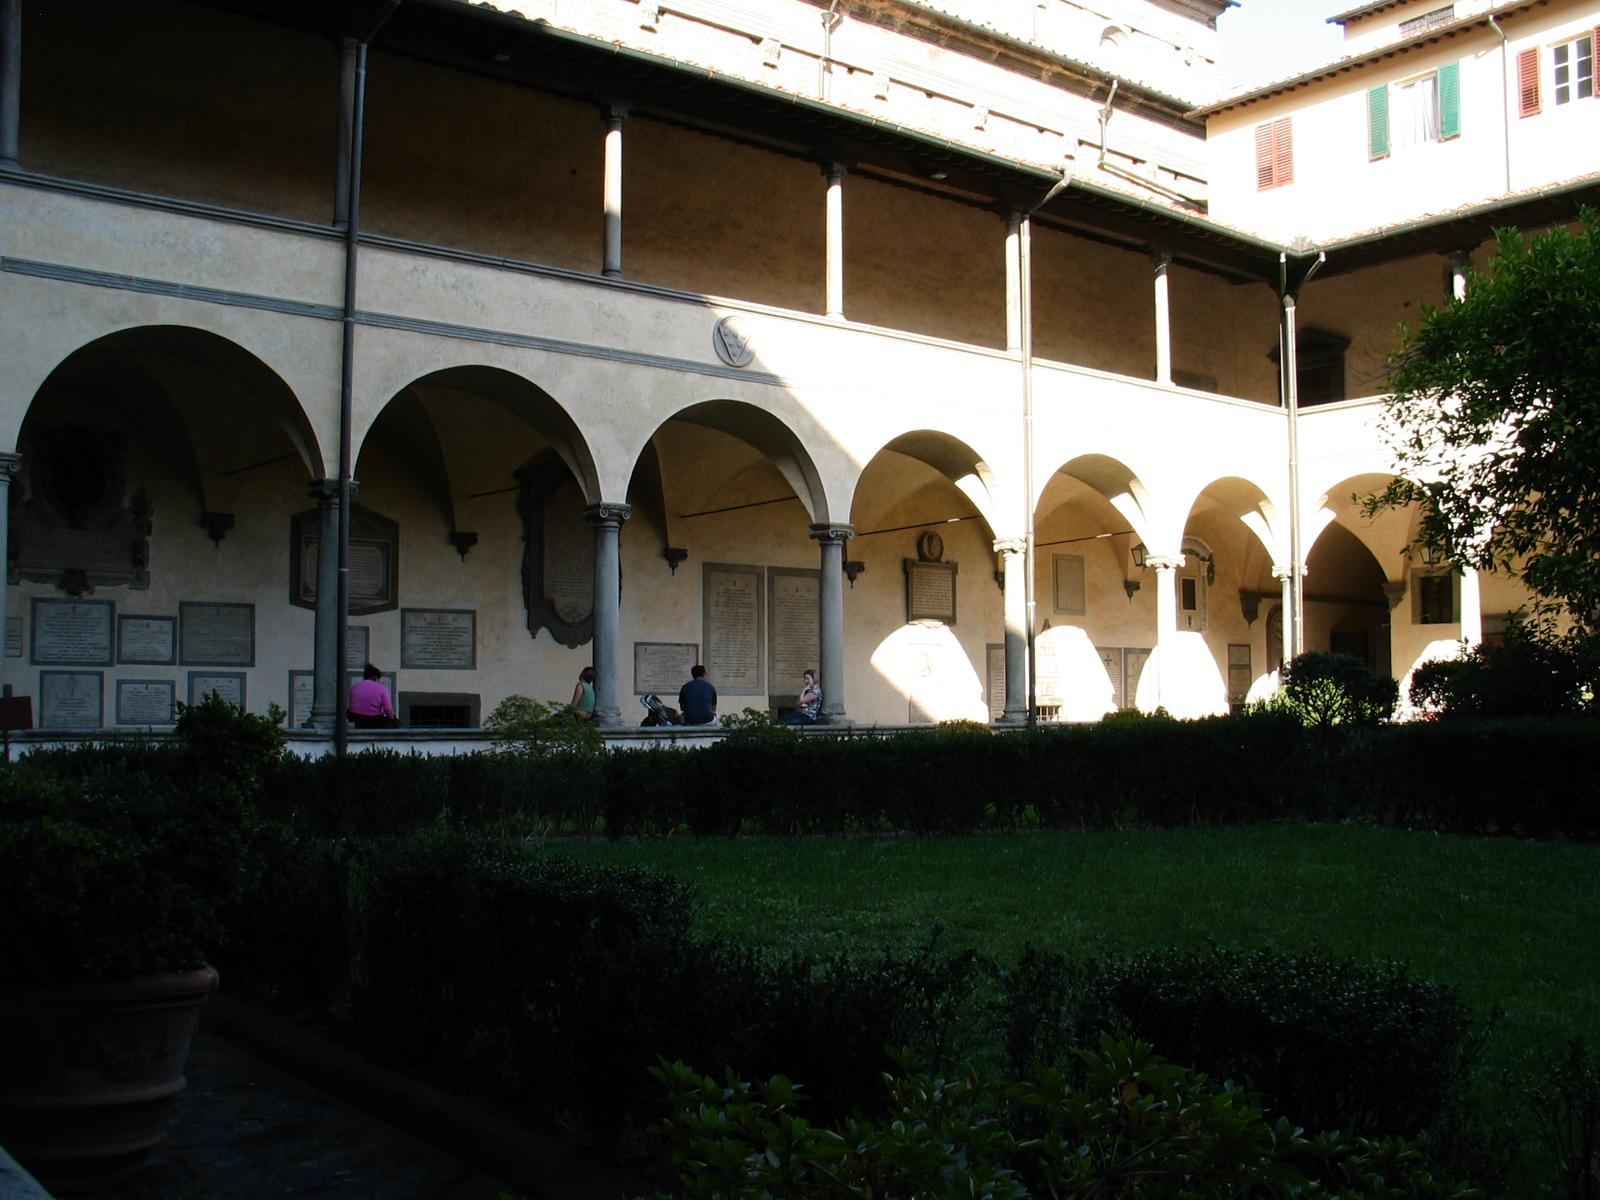 Corridor in a courtyard